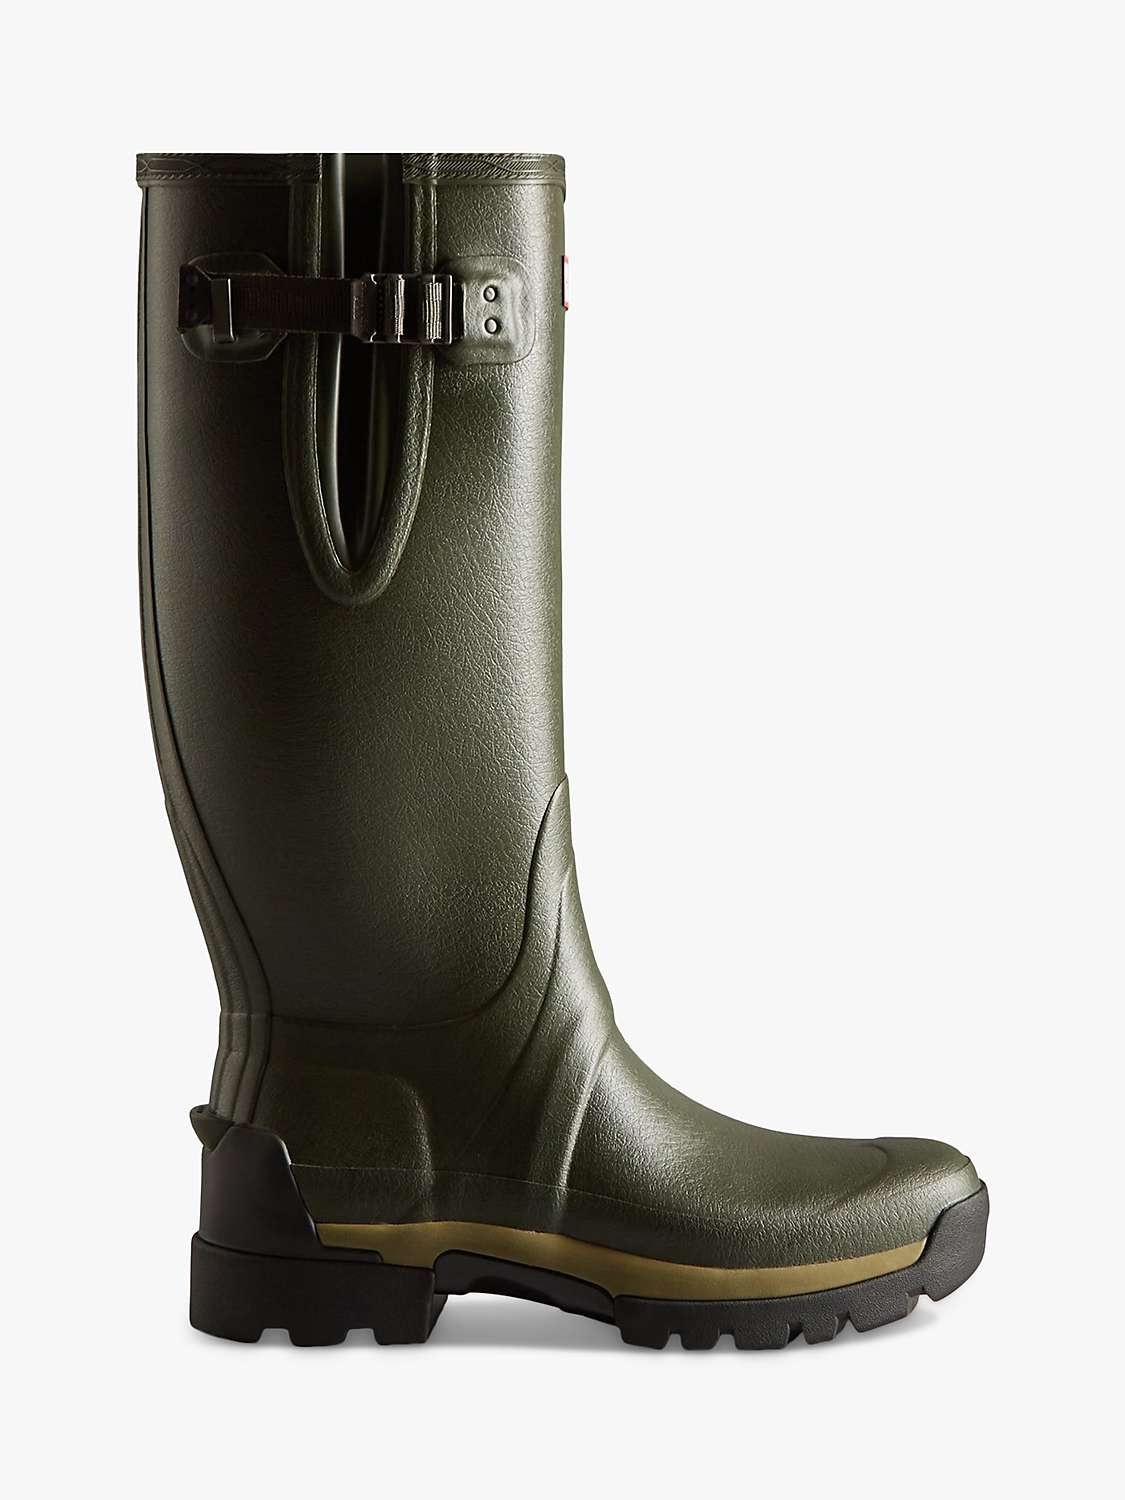 Buy Hunter Men's Balmoral Side Adjustable Wellington Boots, Dark Olive Online at johnlewis.com